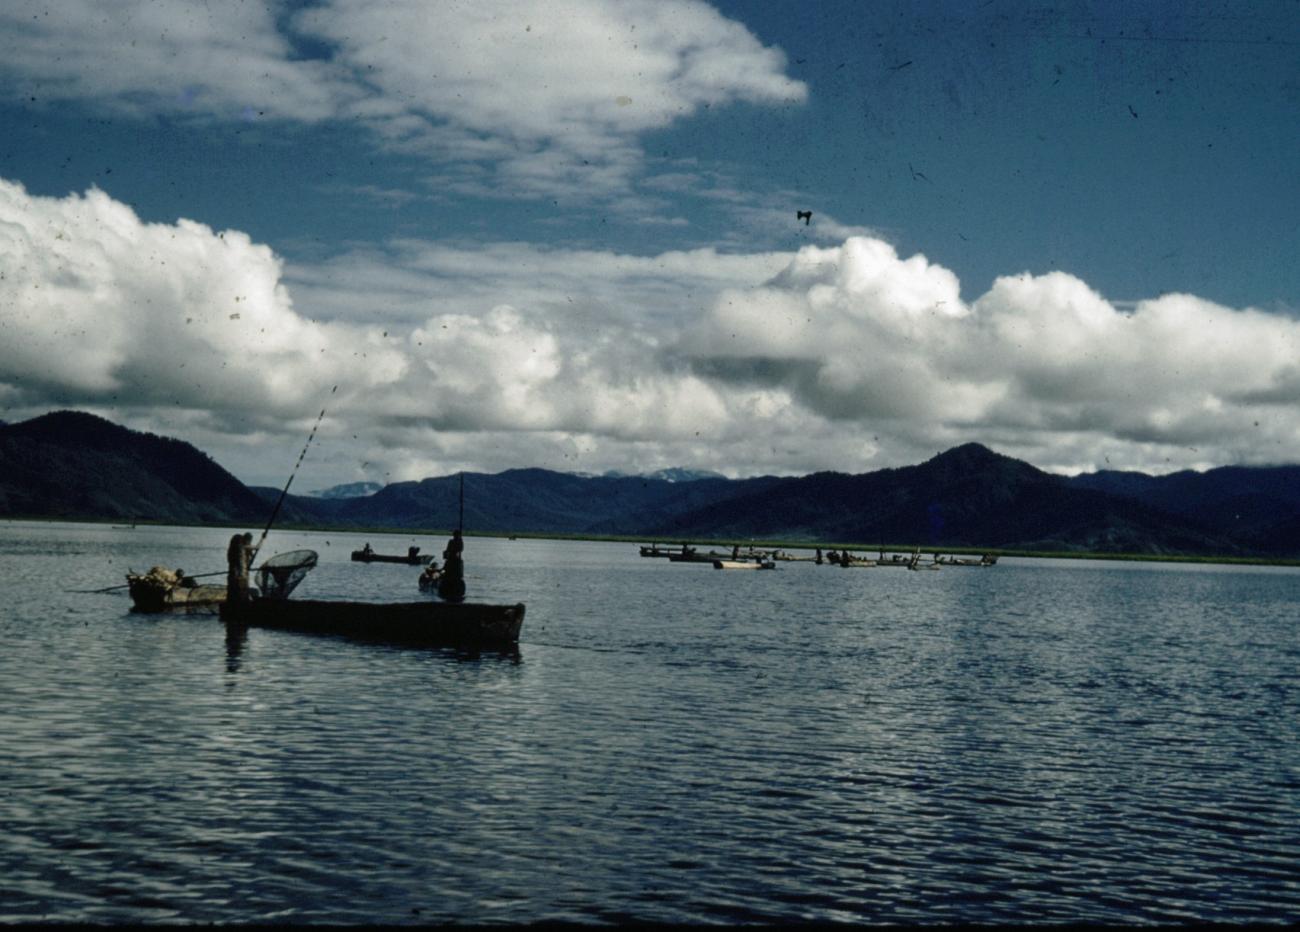 BD/66/54 - 
Fishermen in Bay
